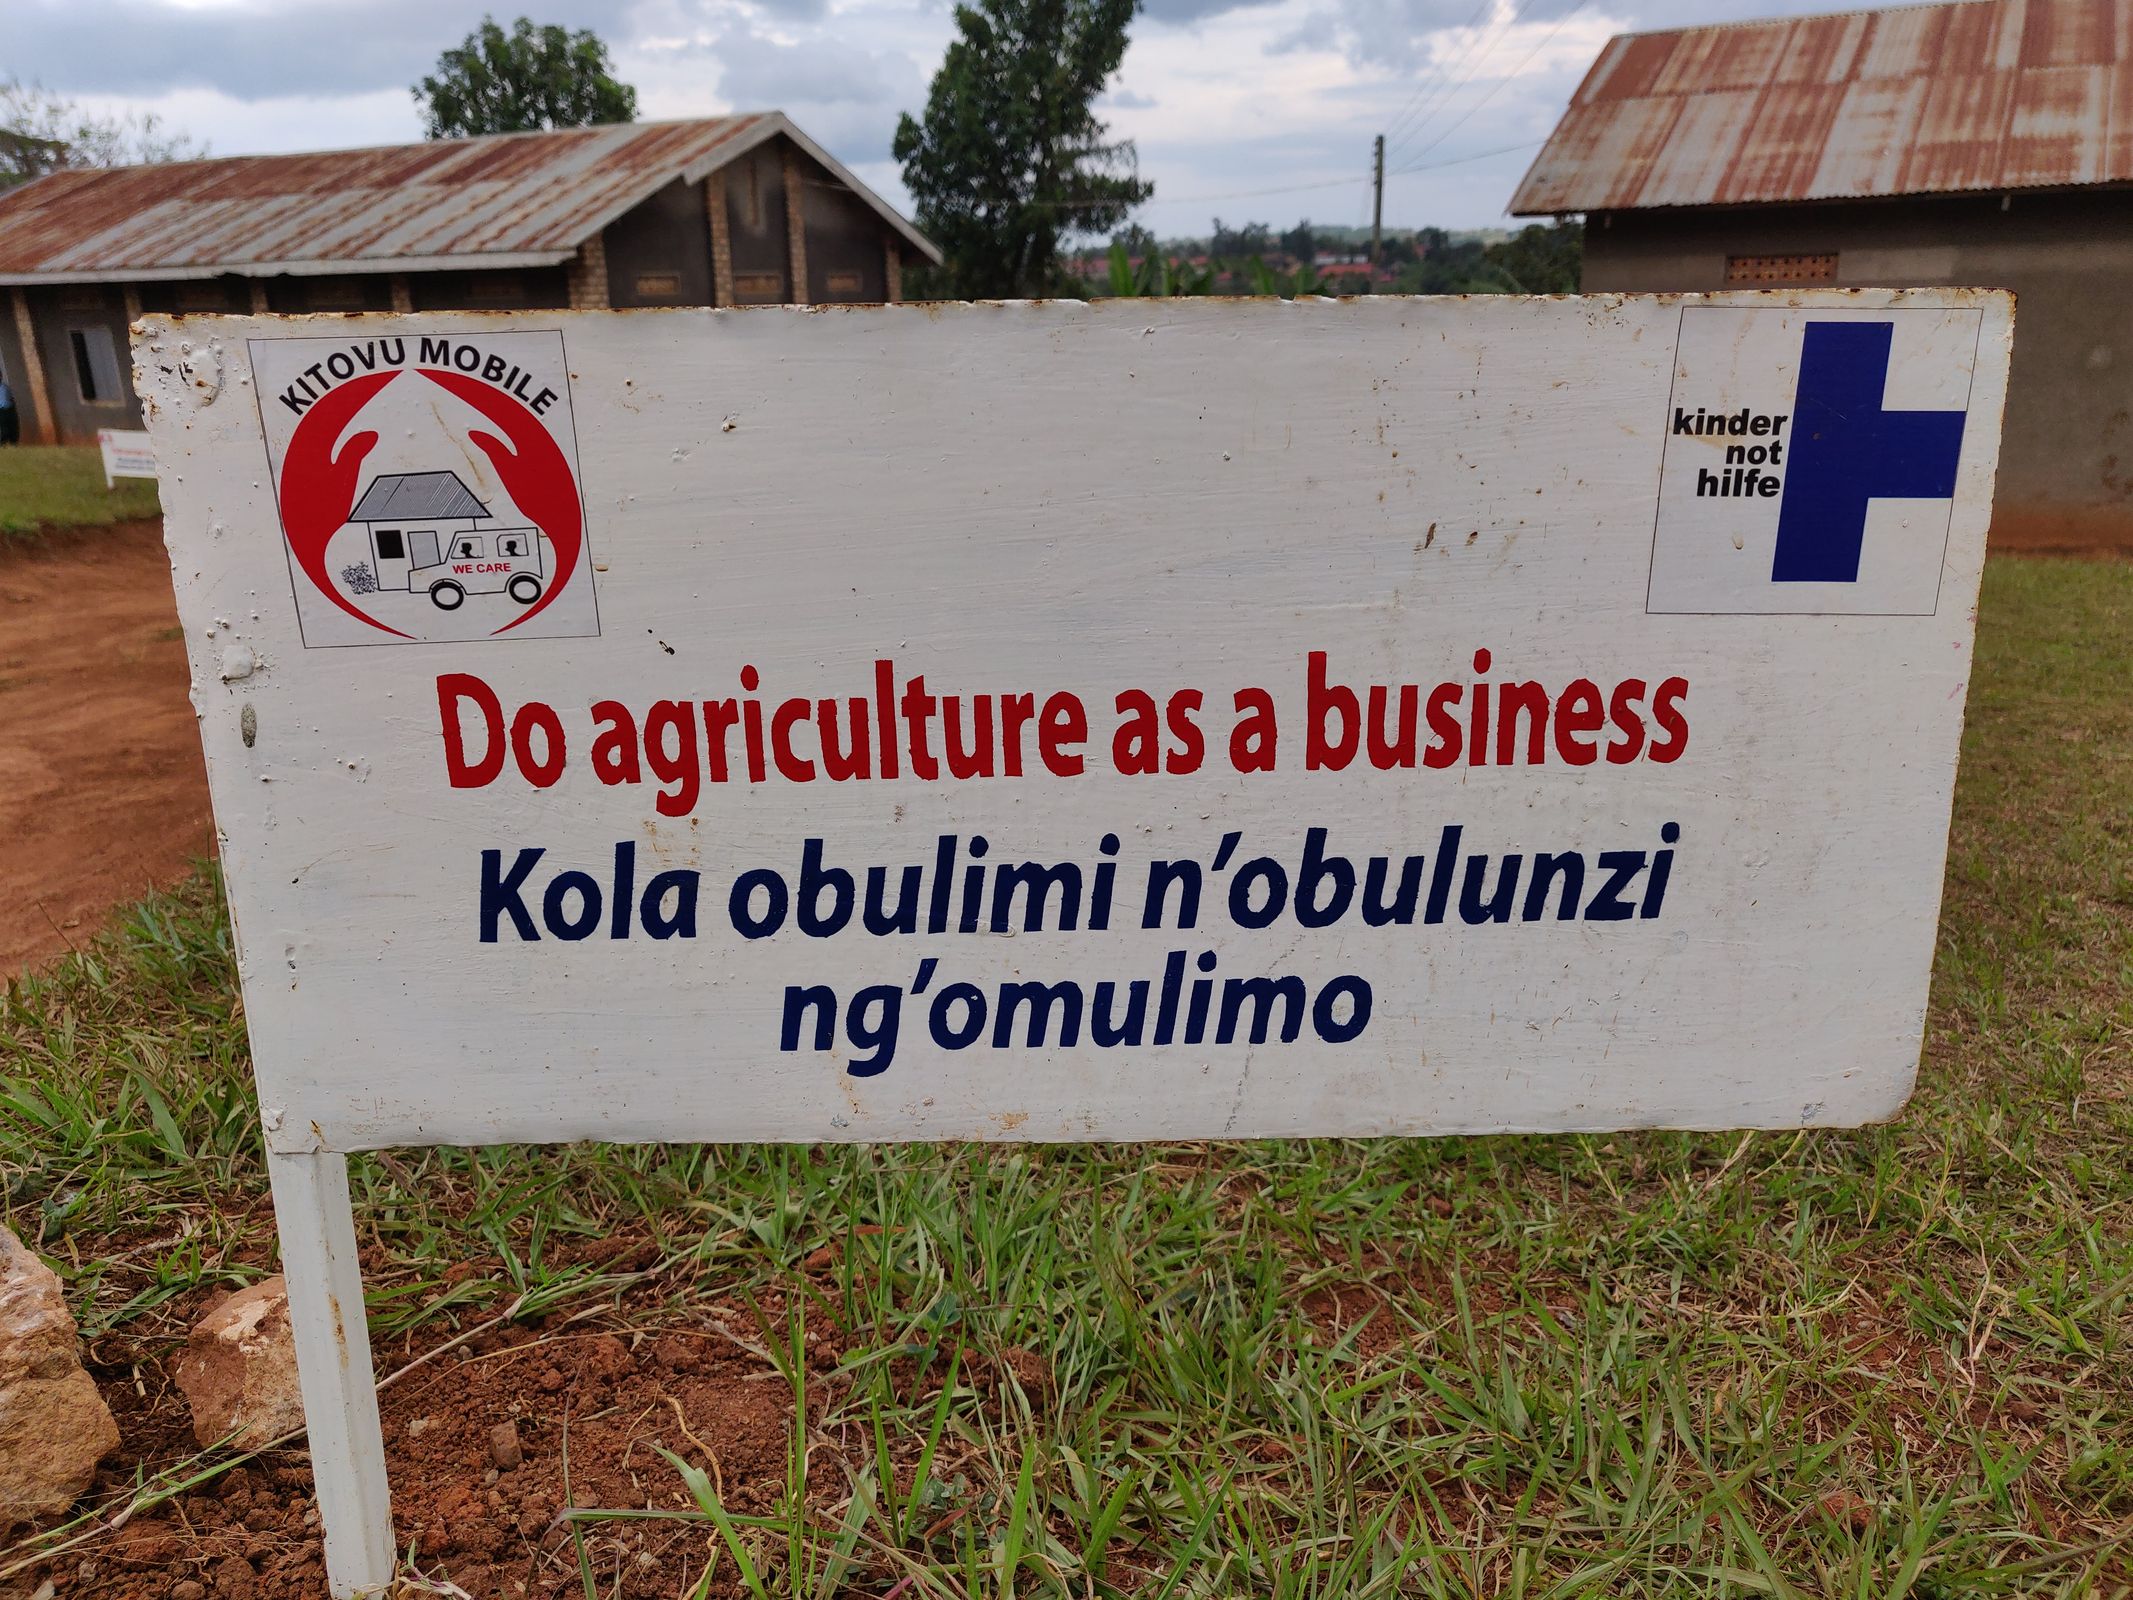 Ein Schild vor einer Farmschule mit der Aufschrift "Do agriculture as business". (Quelle: Katharina Drzisga)